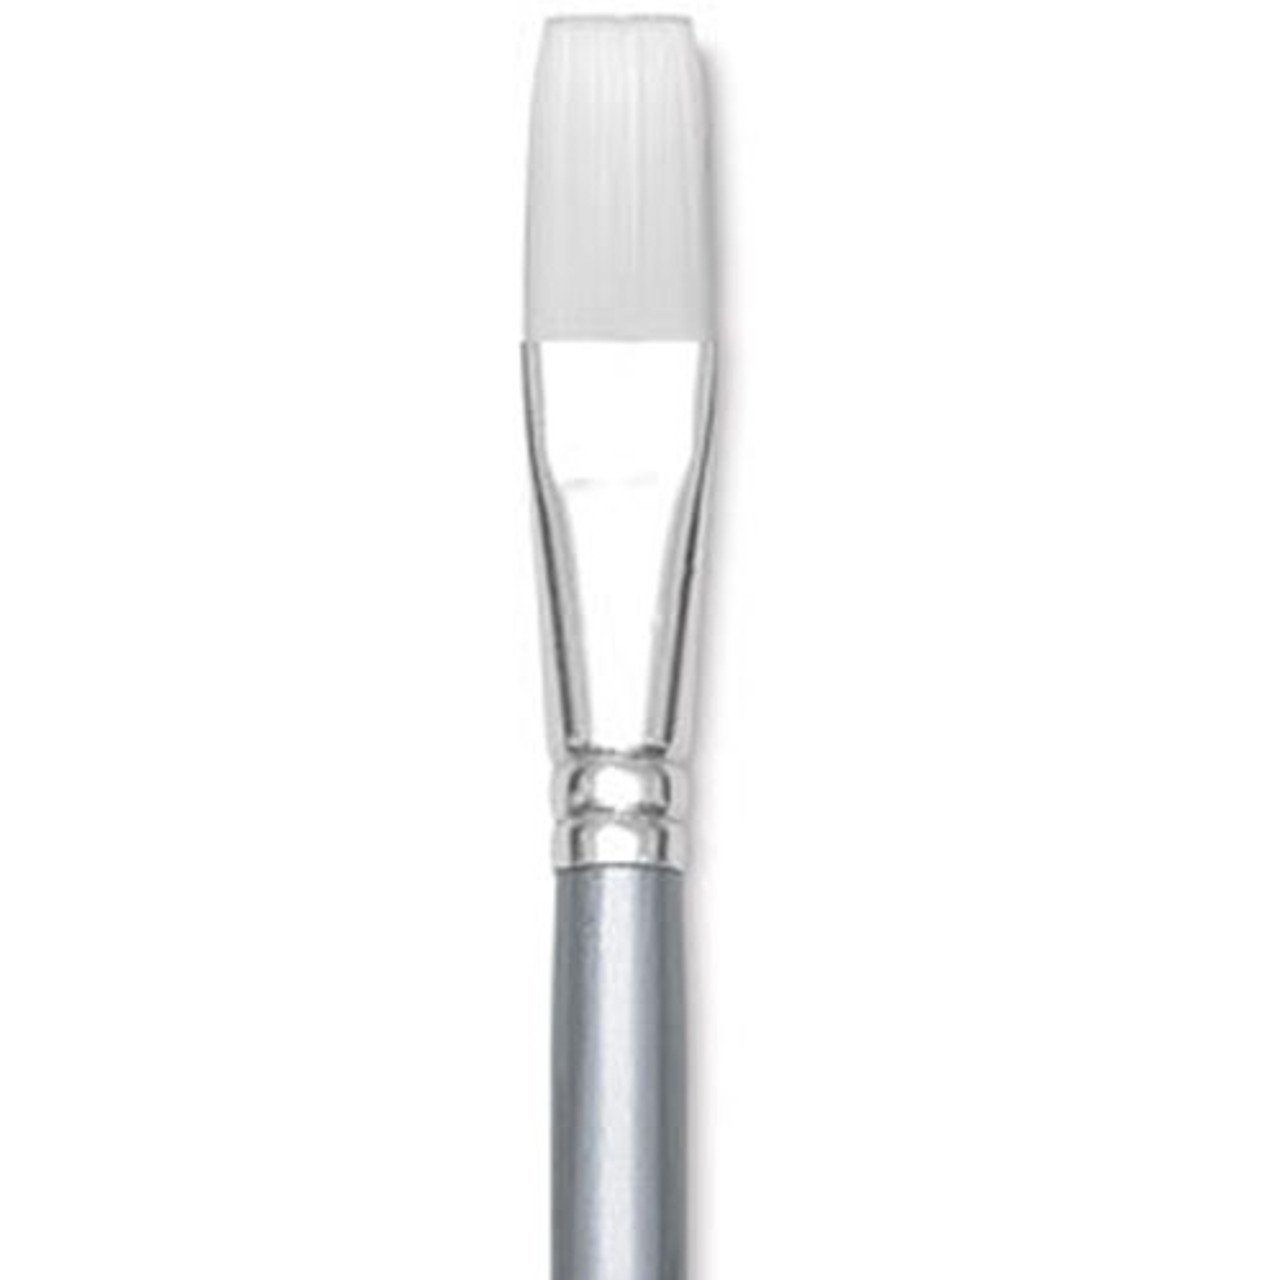 Liquitex Basics Synthetic Brushes - Large Scale Flat, Short Handle Set of 3